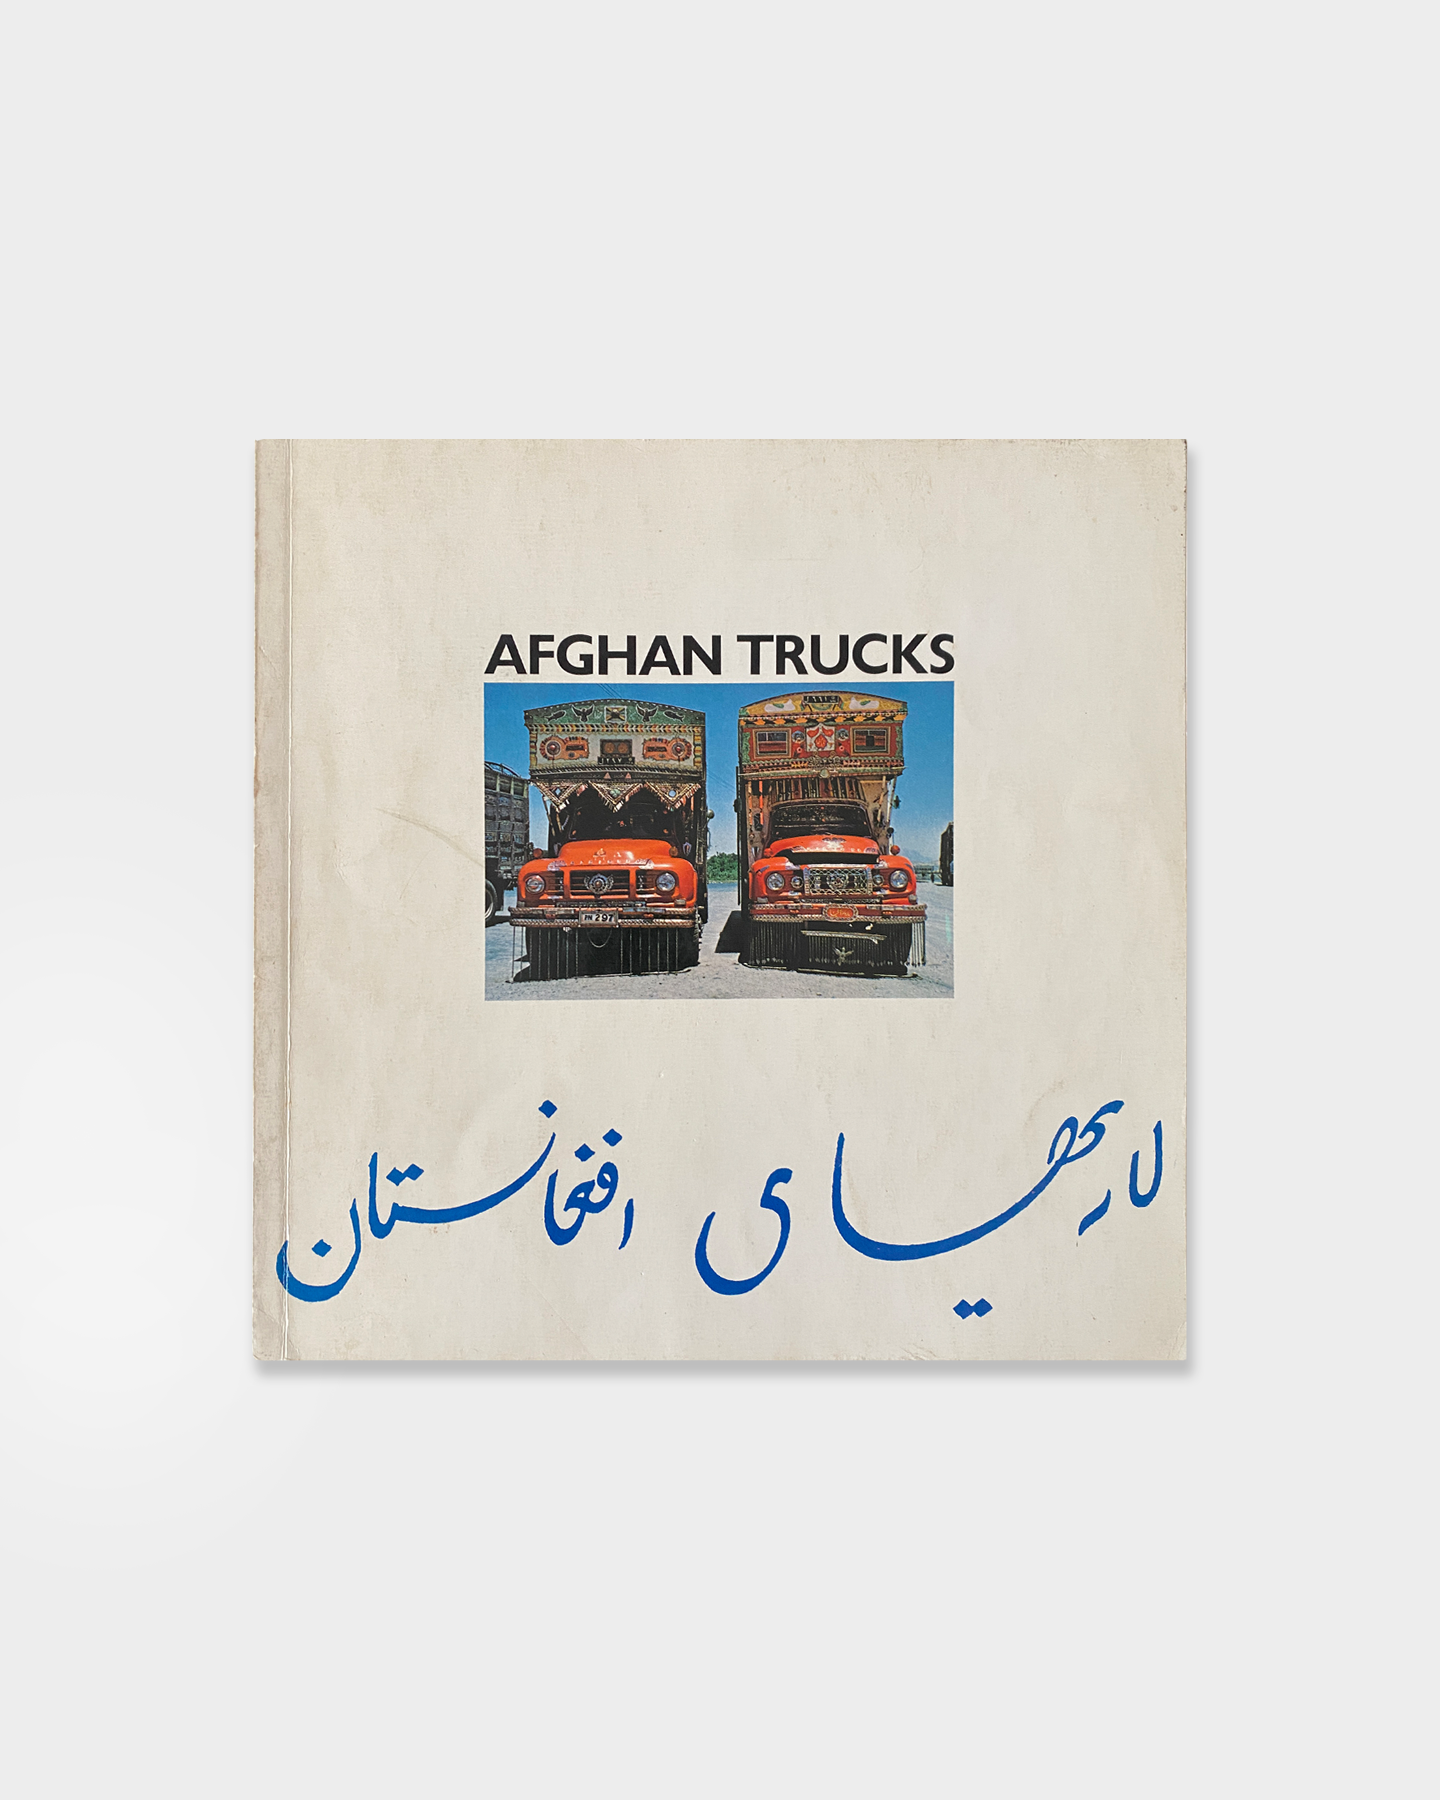 Afghan Trucks (1976)